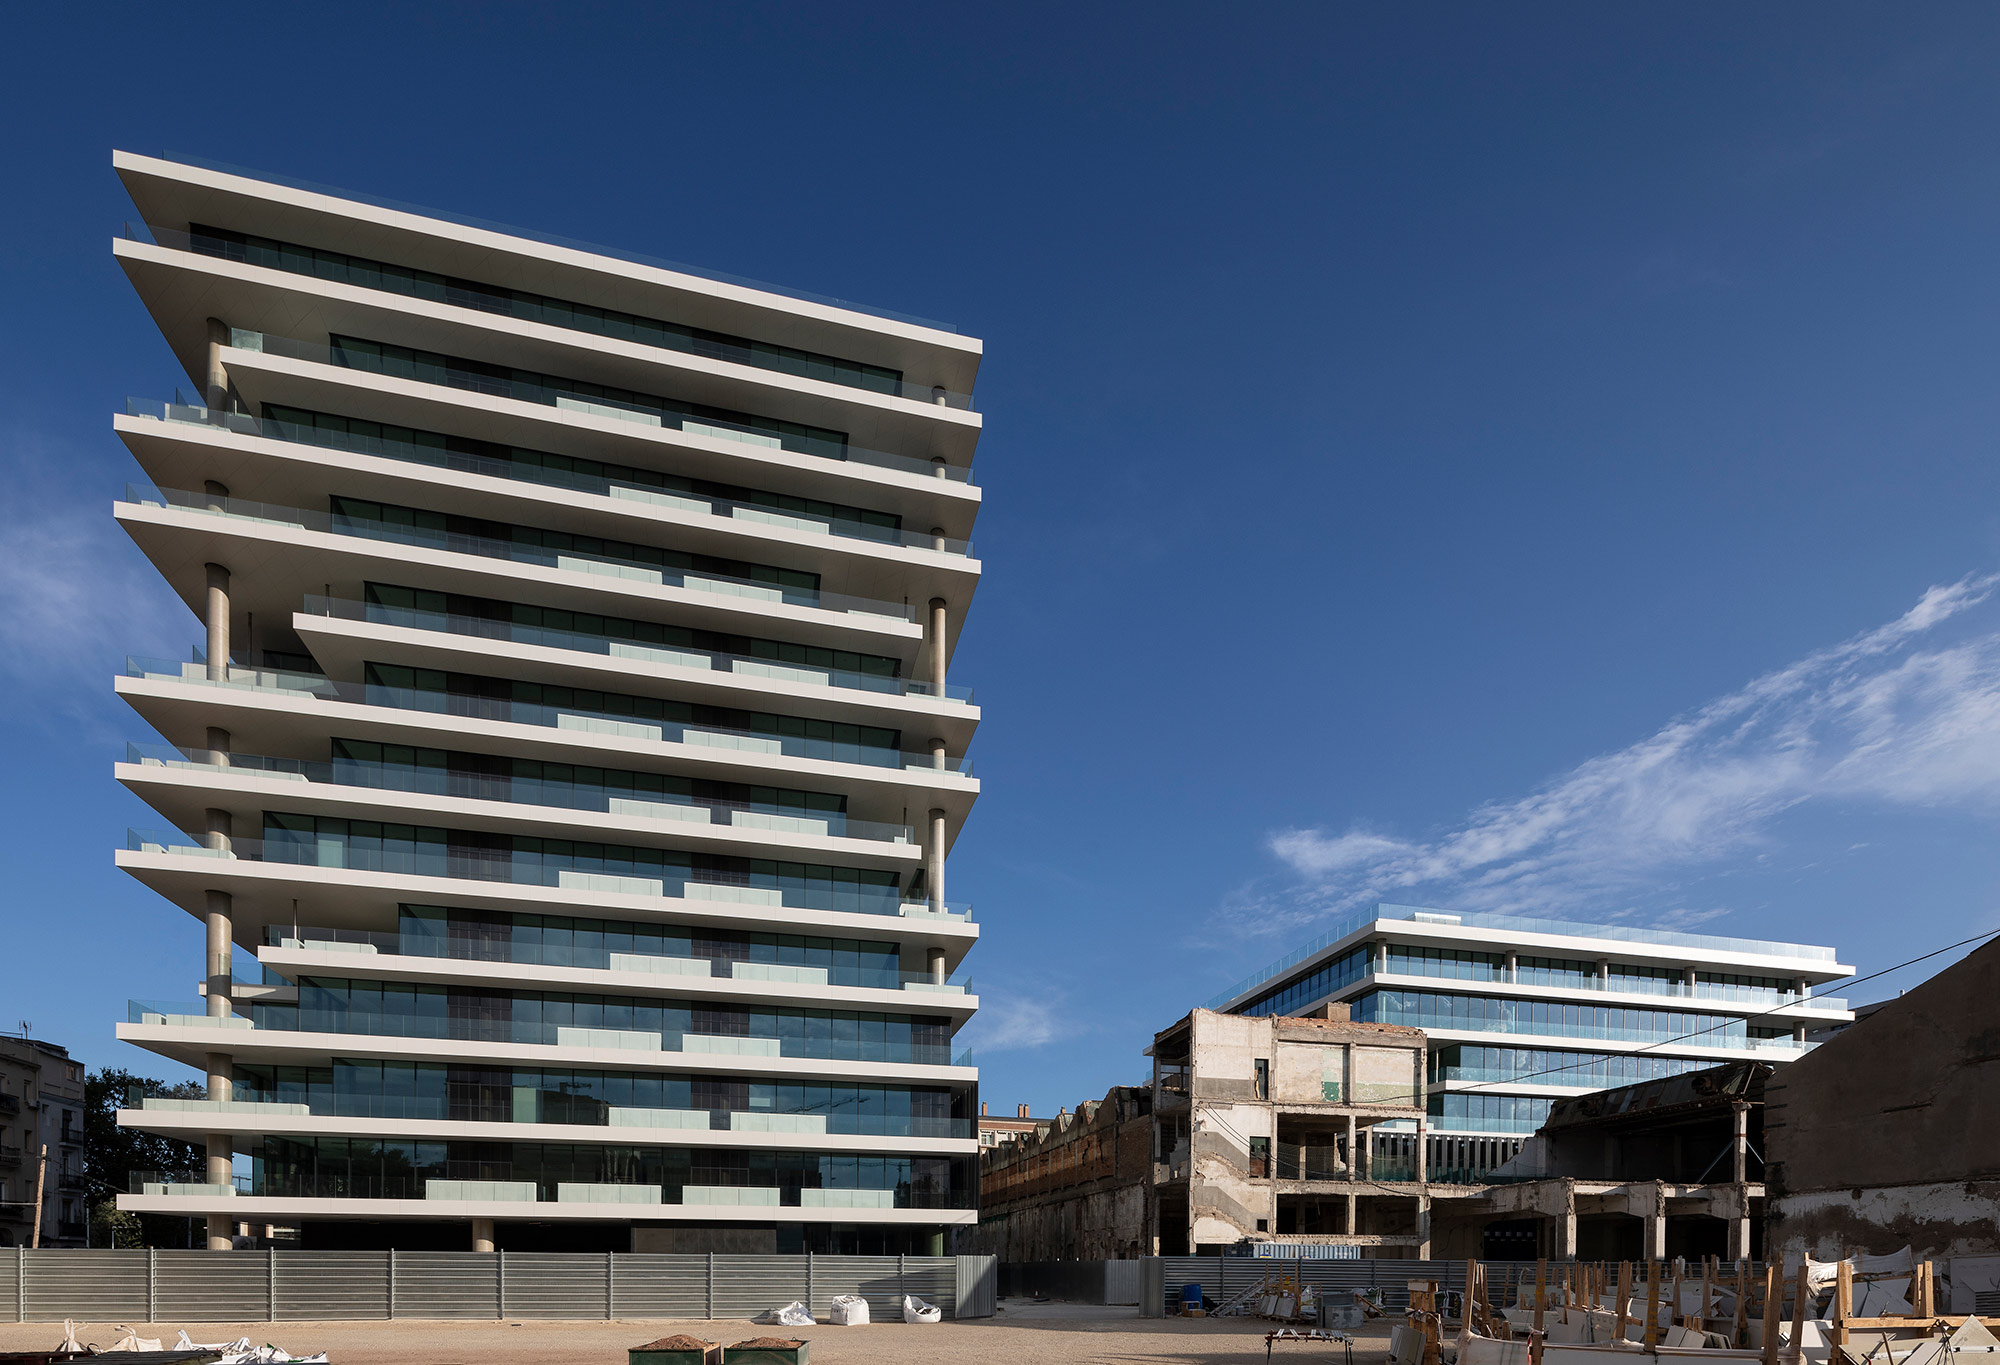 Image of fachada sea towers dekton 4 in Contract - Cosentino